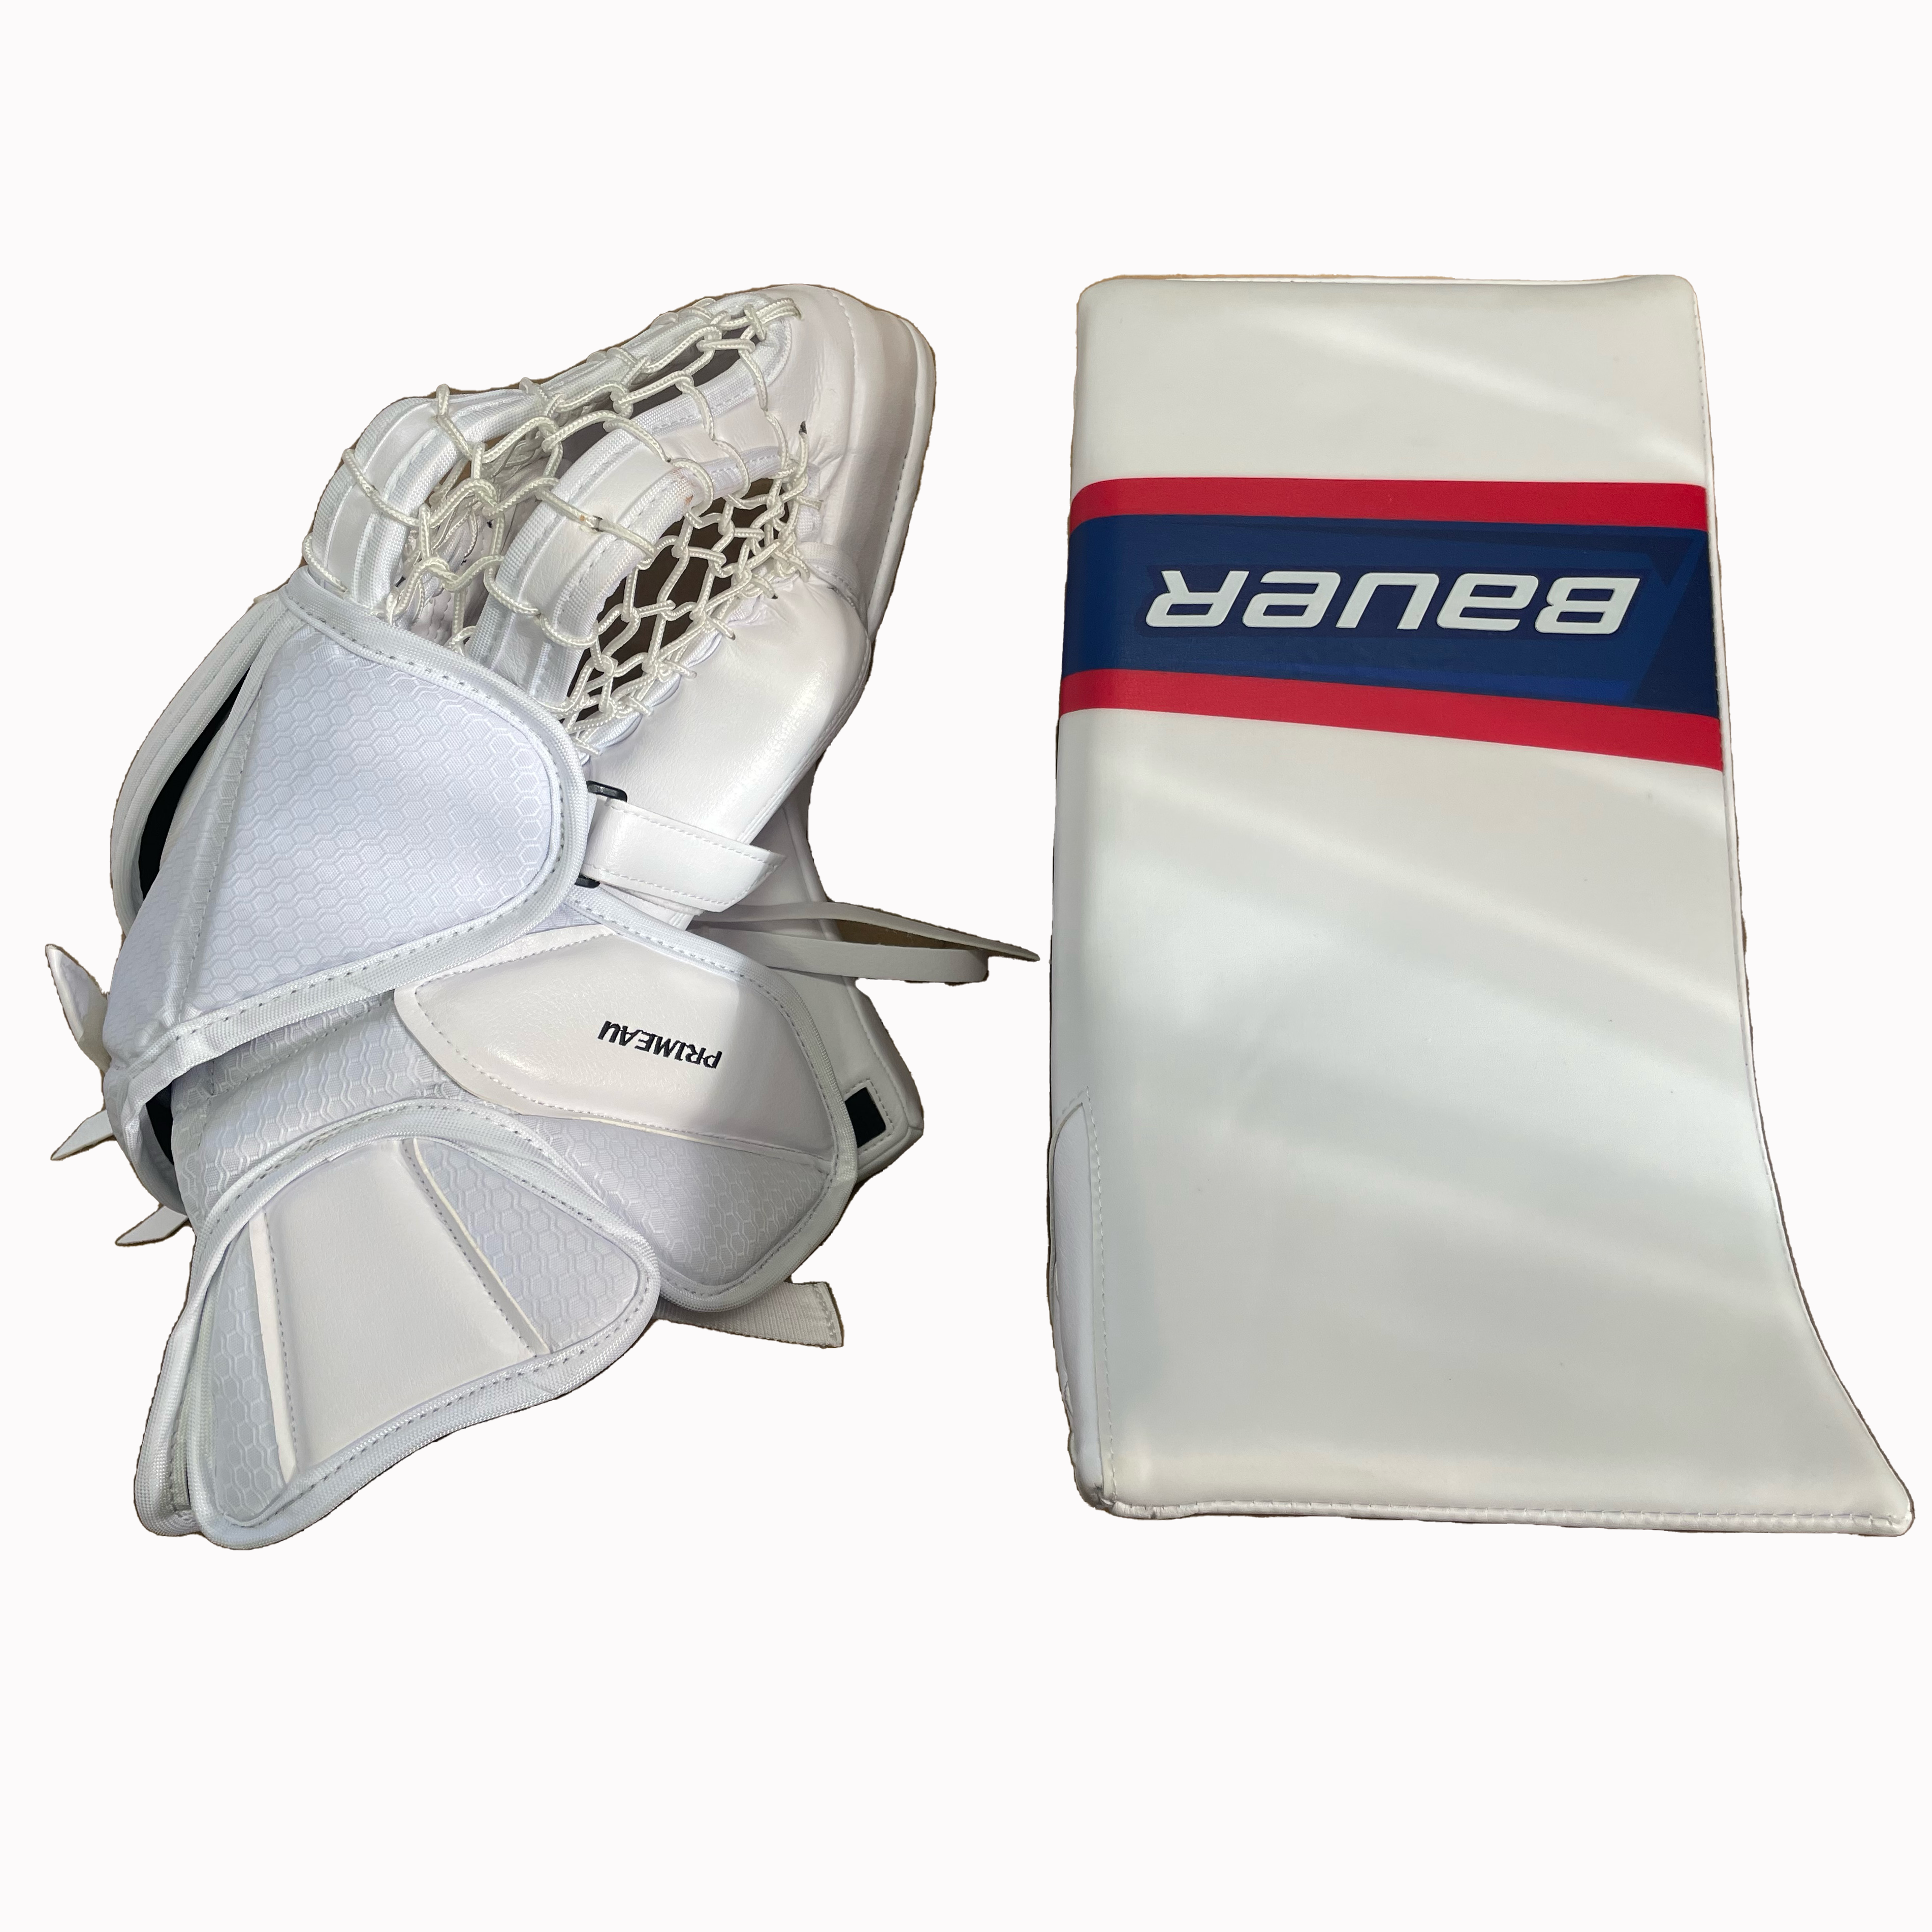 kids hockey gear goalie glove blocker gloves elbow pads padded shirt hip  pads